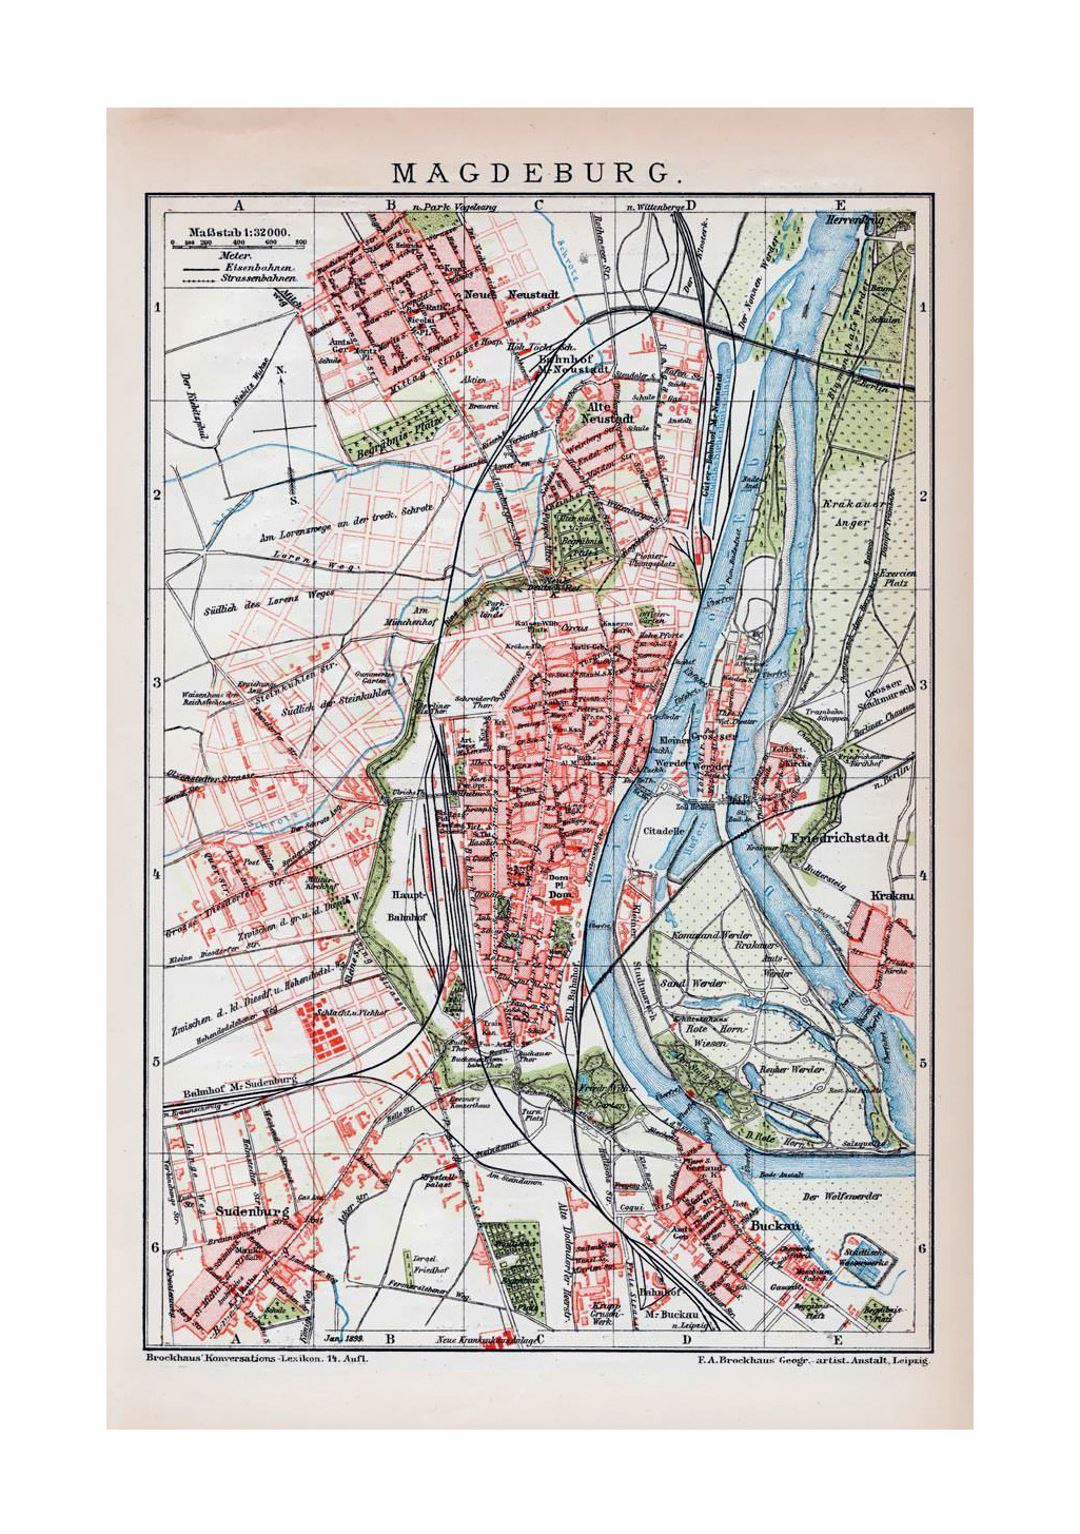 Viejo mapa detallado de la ciudad de Magdeburgo